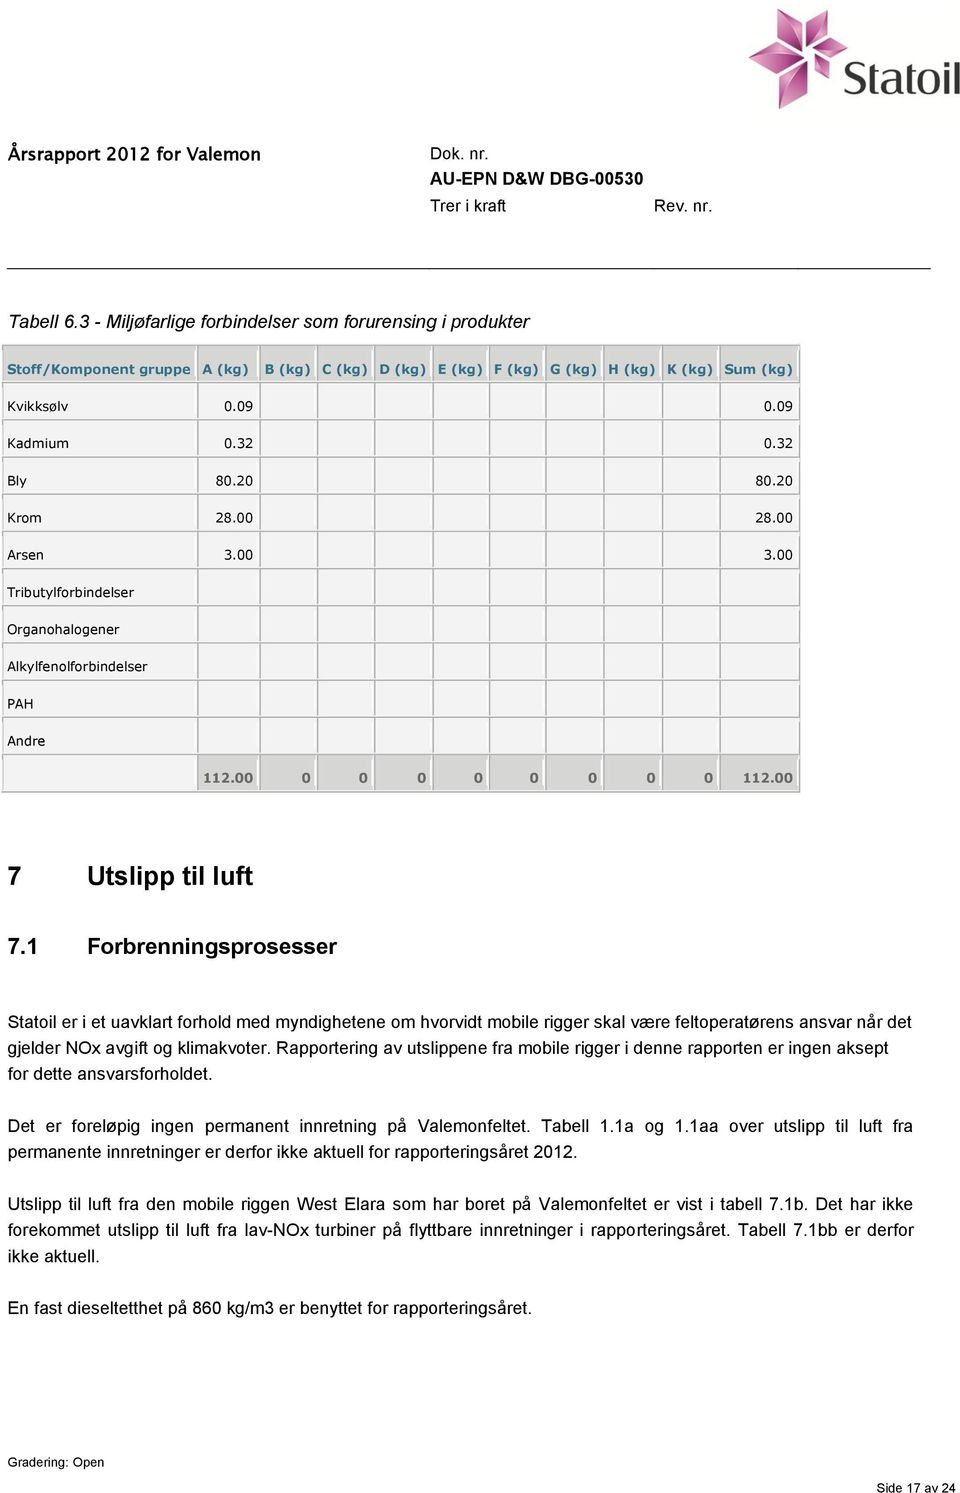 1 Forbrenningsprosesser Statoil er i et uavklart forhold med myndighetene om hvorvidt mobile rigger skal være feltoperatørens ansvar når det gjelder NOx avgift og klimakvoter.